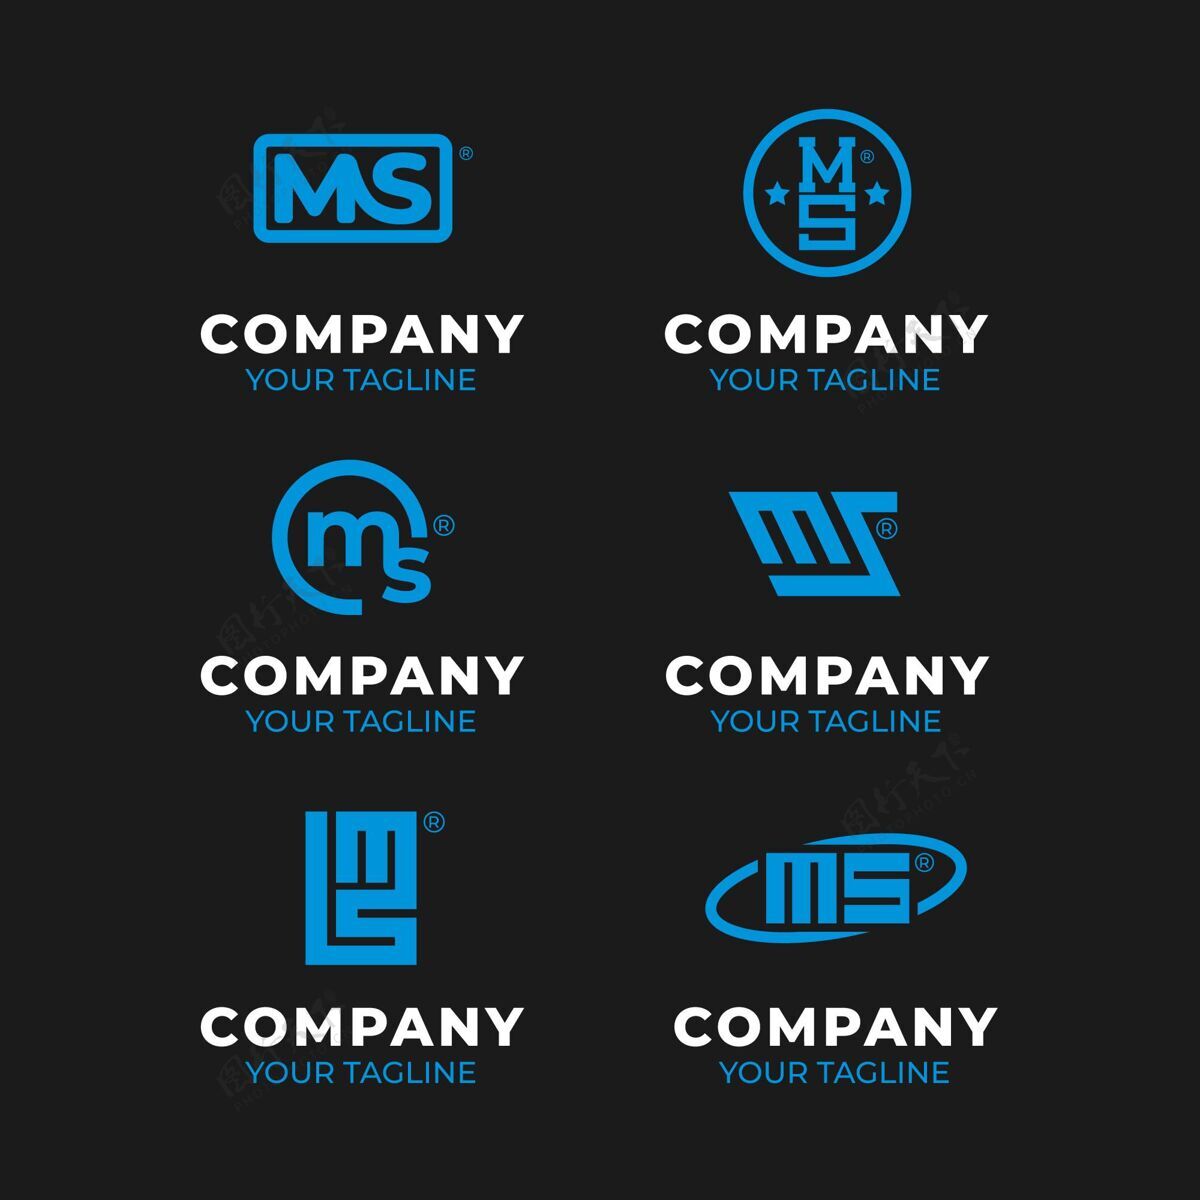 平面设计平面设计ms标志包品牌企业标识公司